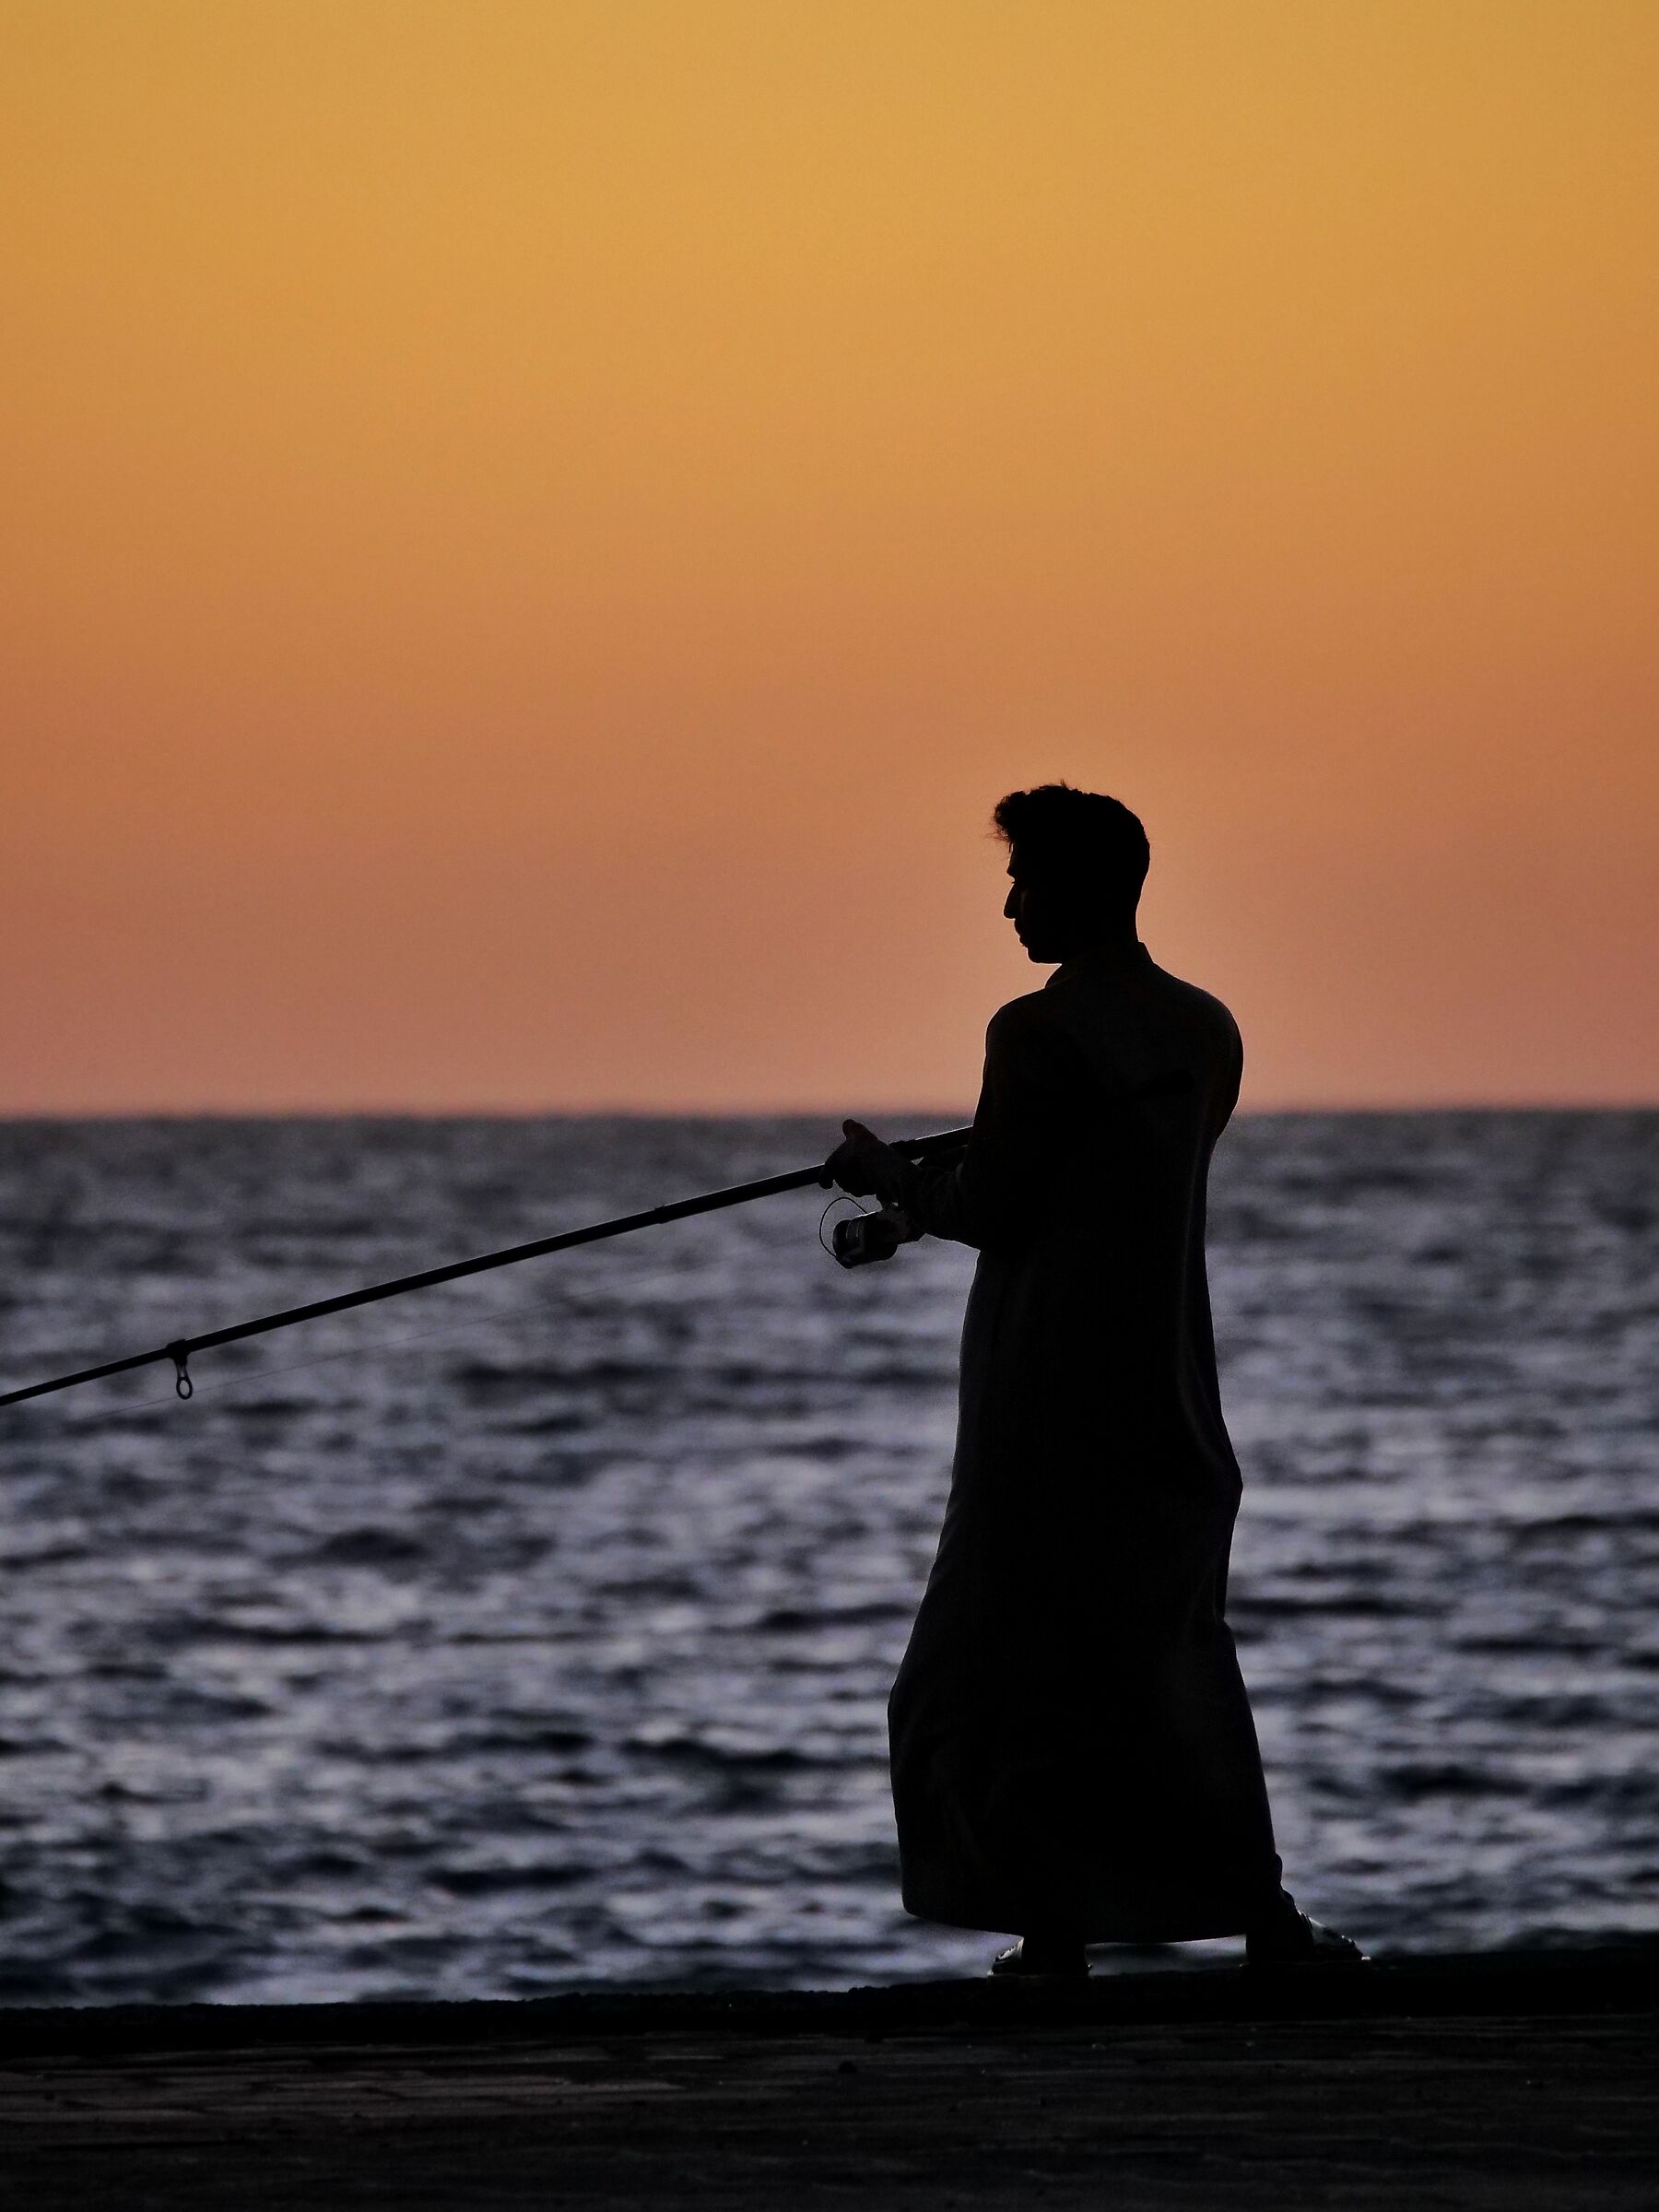 The Saudi Fisherman...